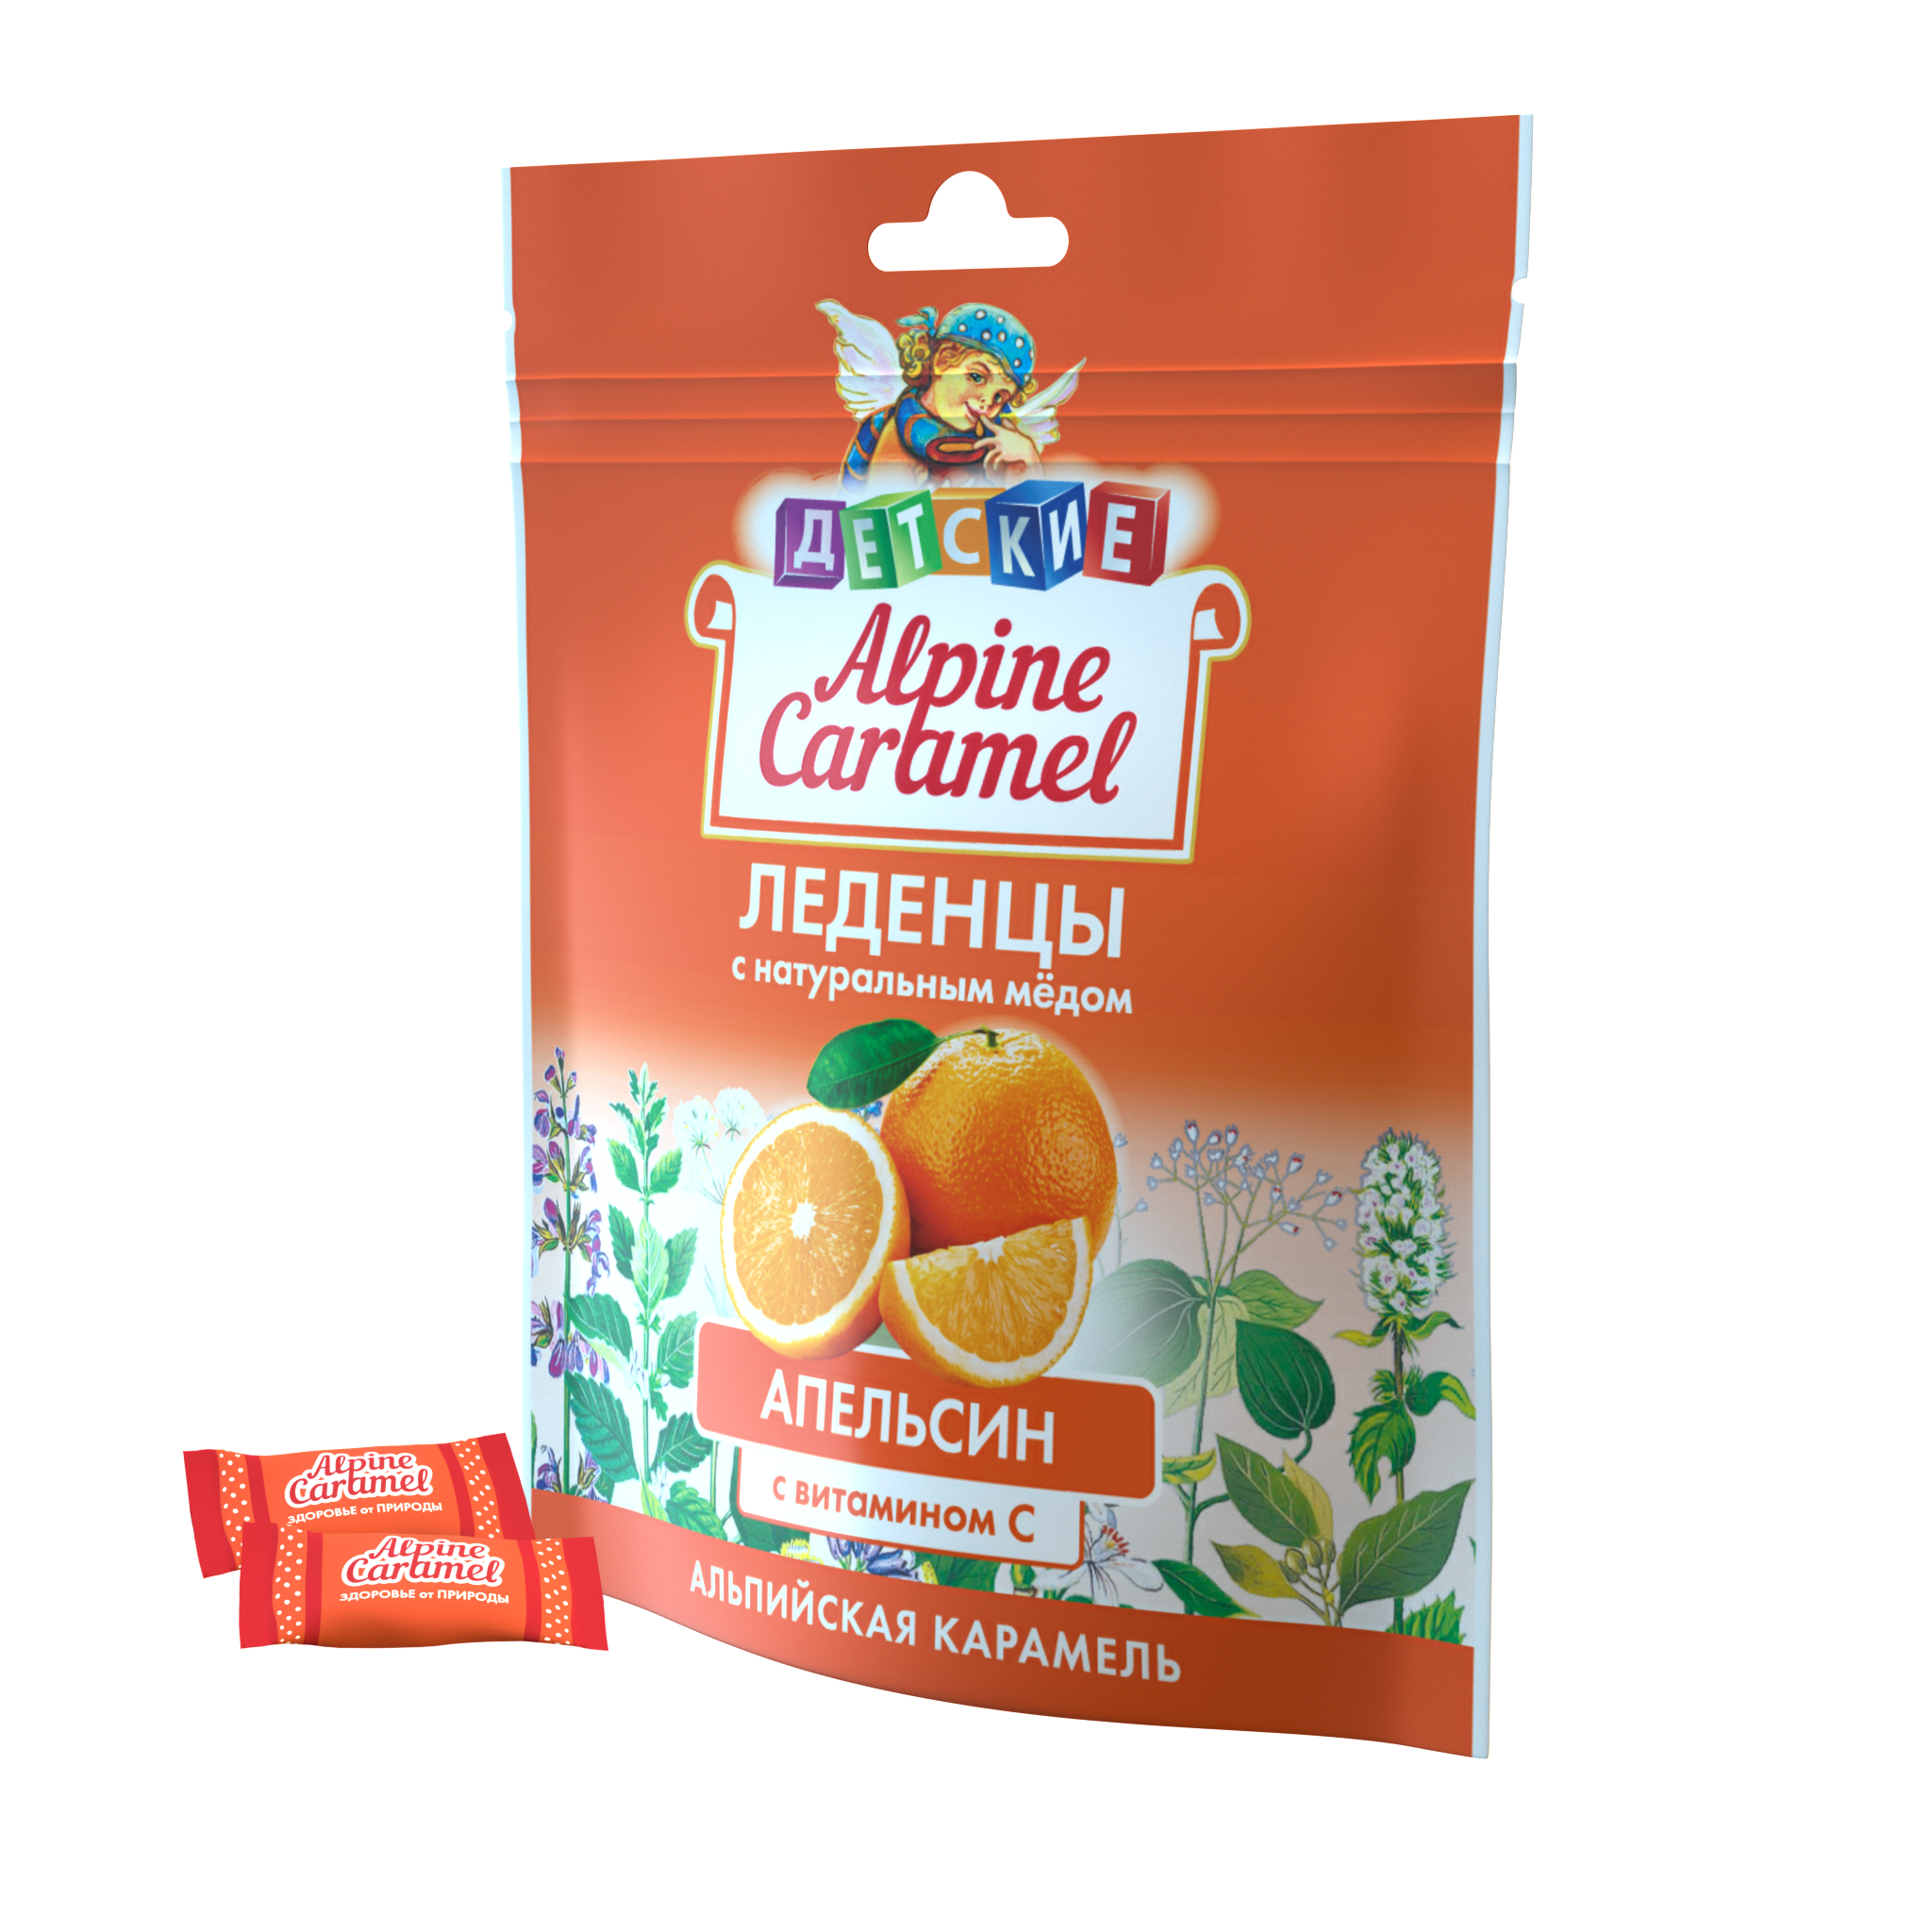 Alpine Caramel Альпийская Карамель леденцы дет (апельсин с медом и витамином С), 75 г альпийская карамель леденцы без сахара уп 75 г 1 шт